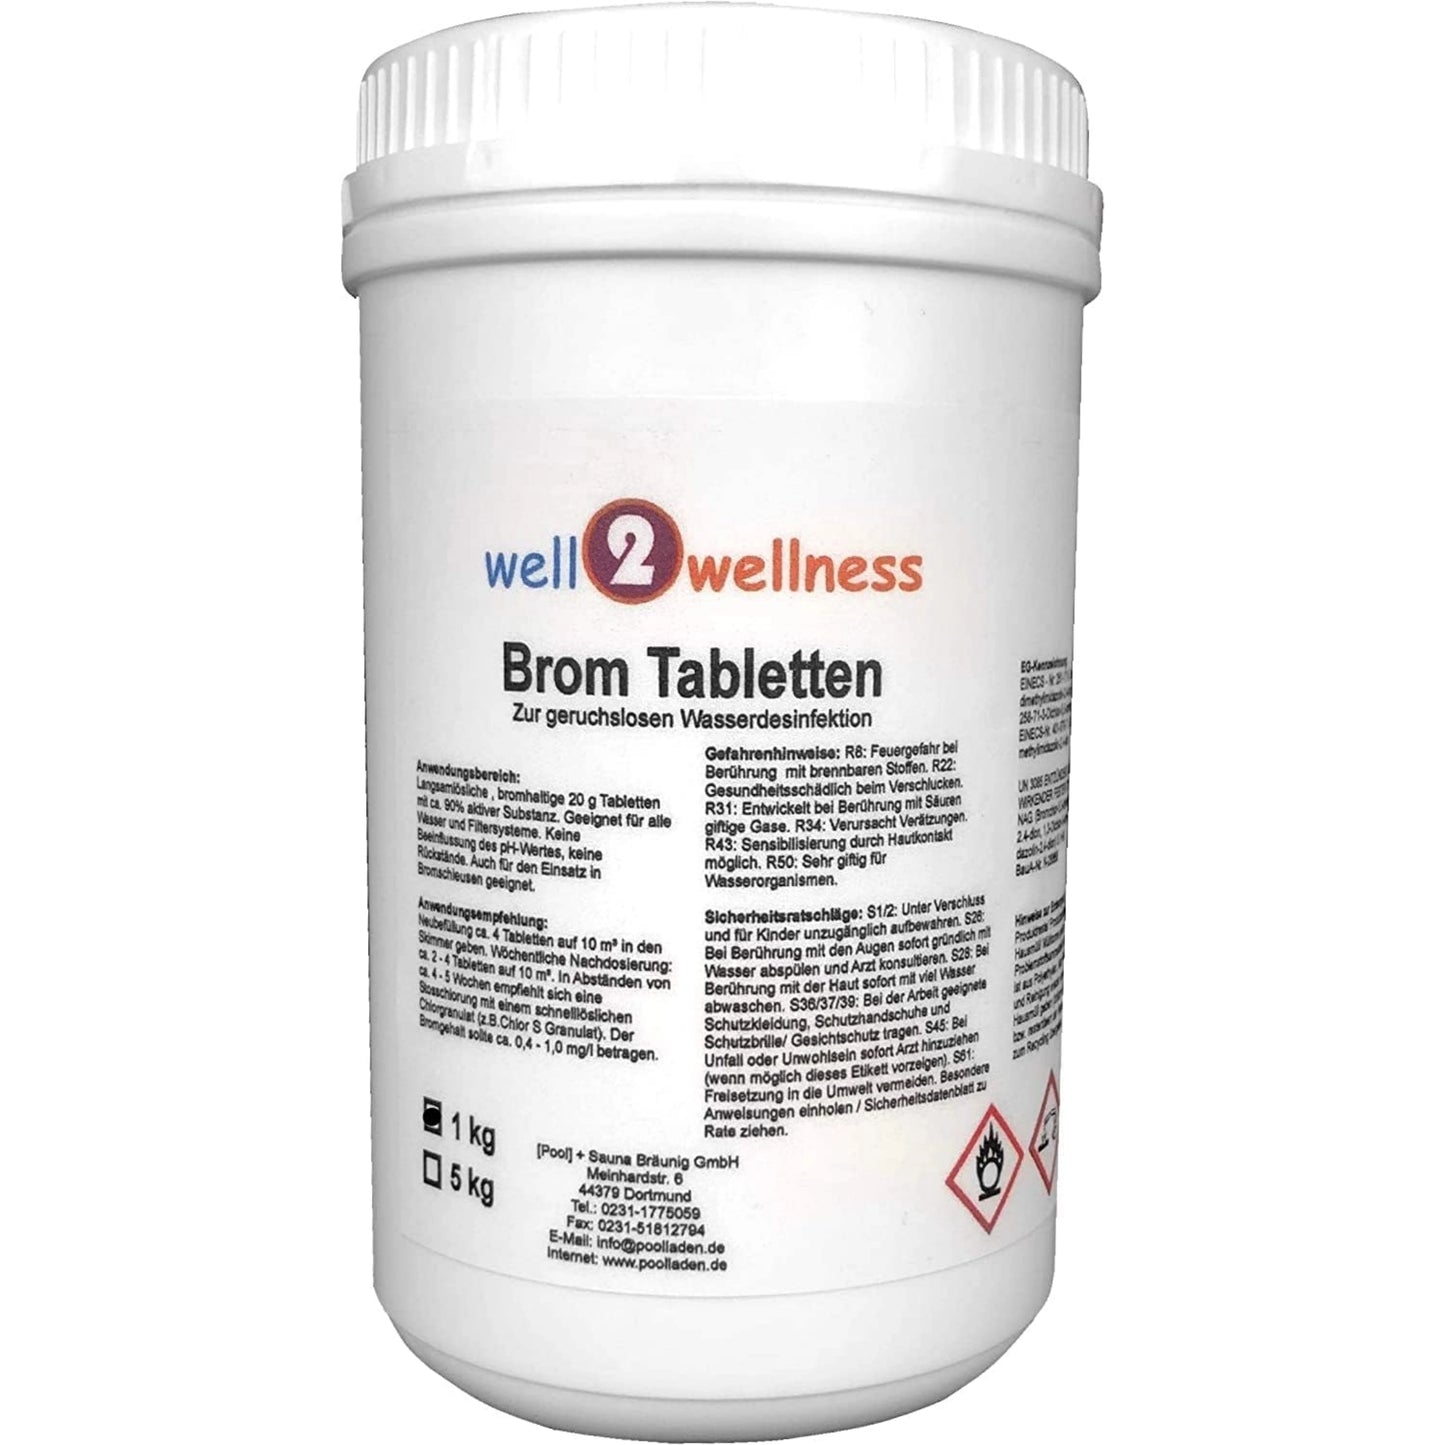 well2wellness® Brom Tabletten für eine chlorfreie Desinfektion